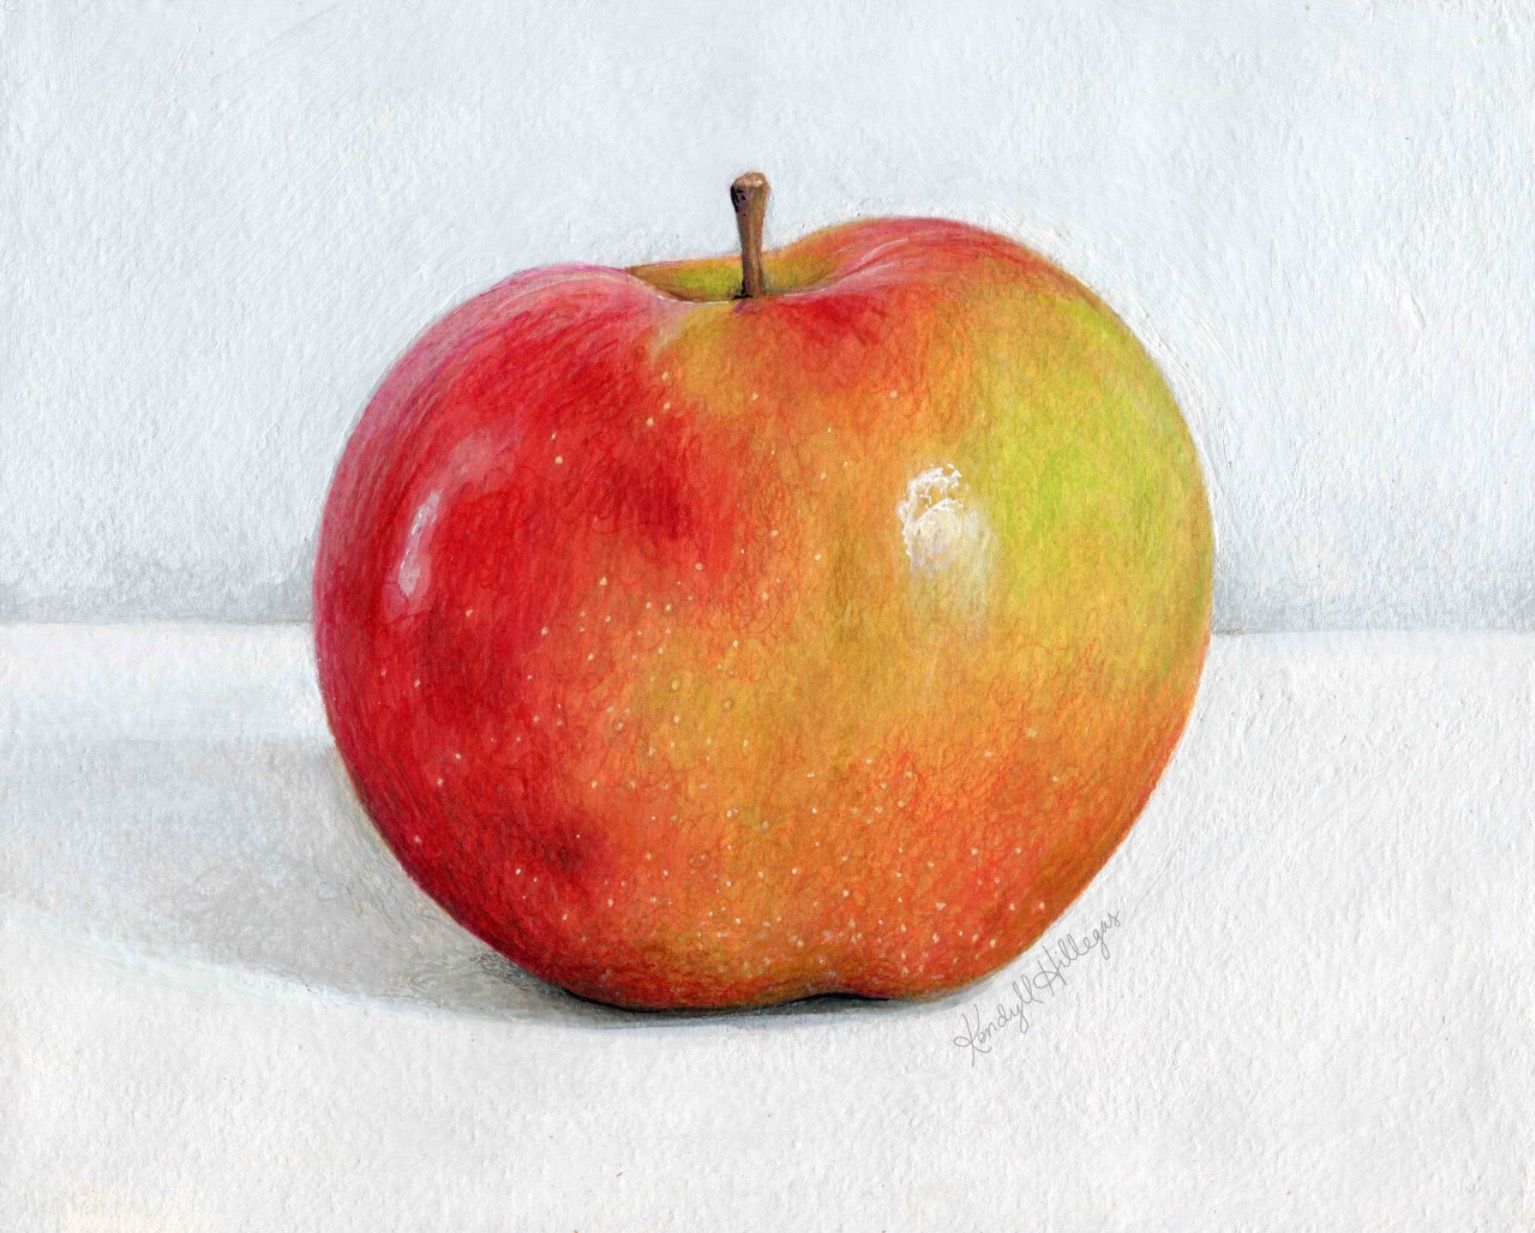 Яблоко для рисования с натуры